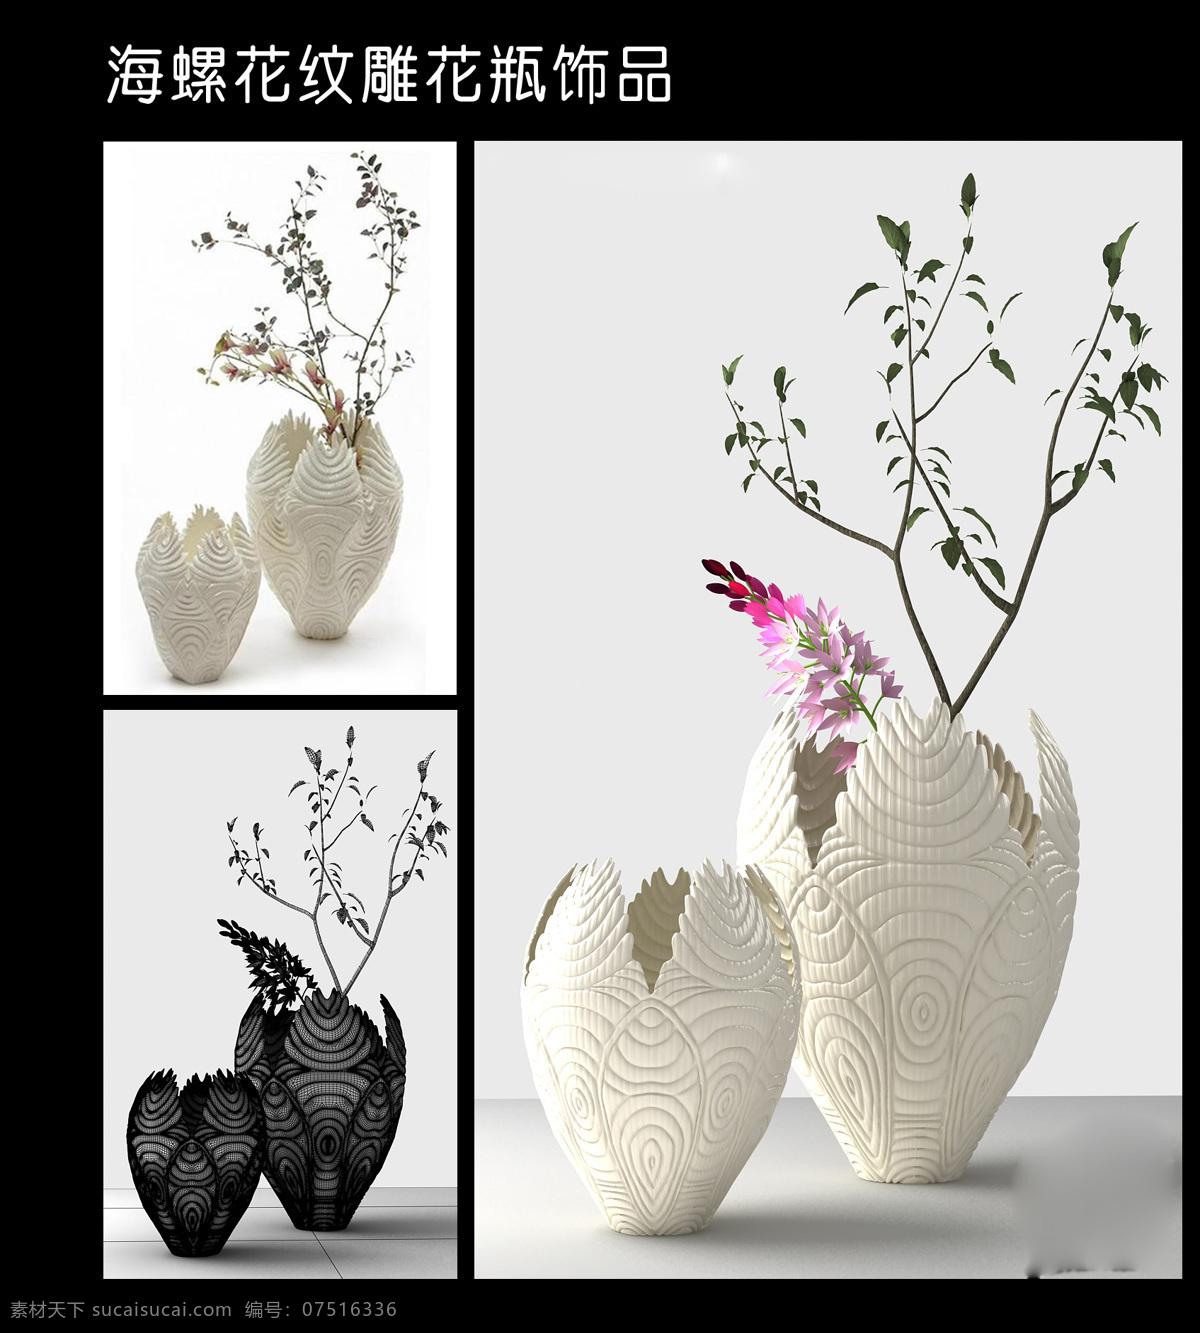 3d设计模型 max 花瓶 模型 室内模型 源文件 装饰品 螺 花纹 雕花 瓶 饰品 海螺 模板下载 插花瓶 陶具 3d模型素材 其他3d模型